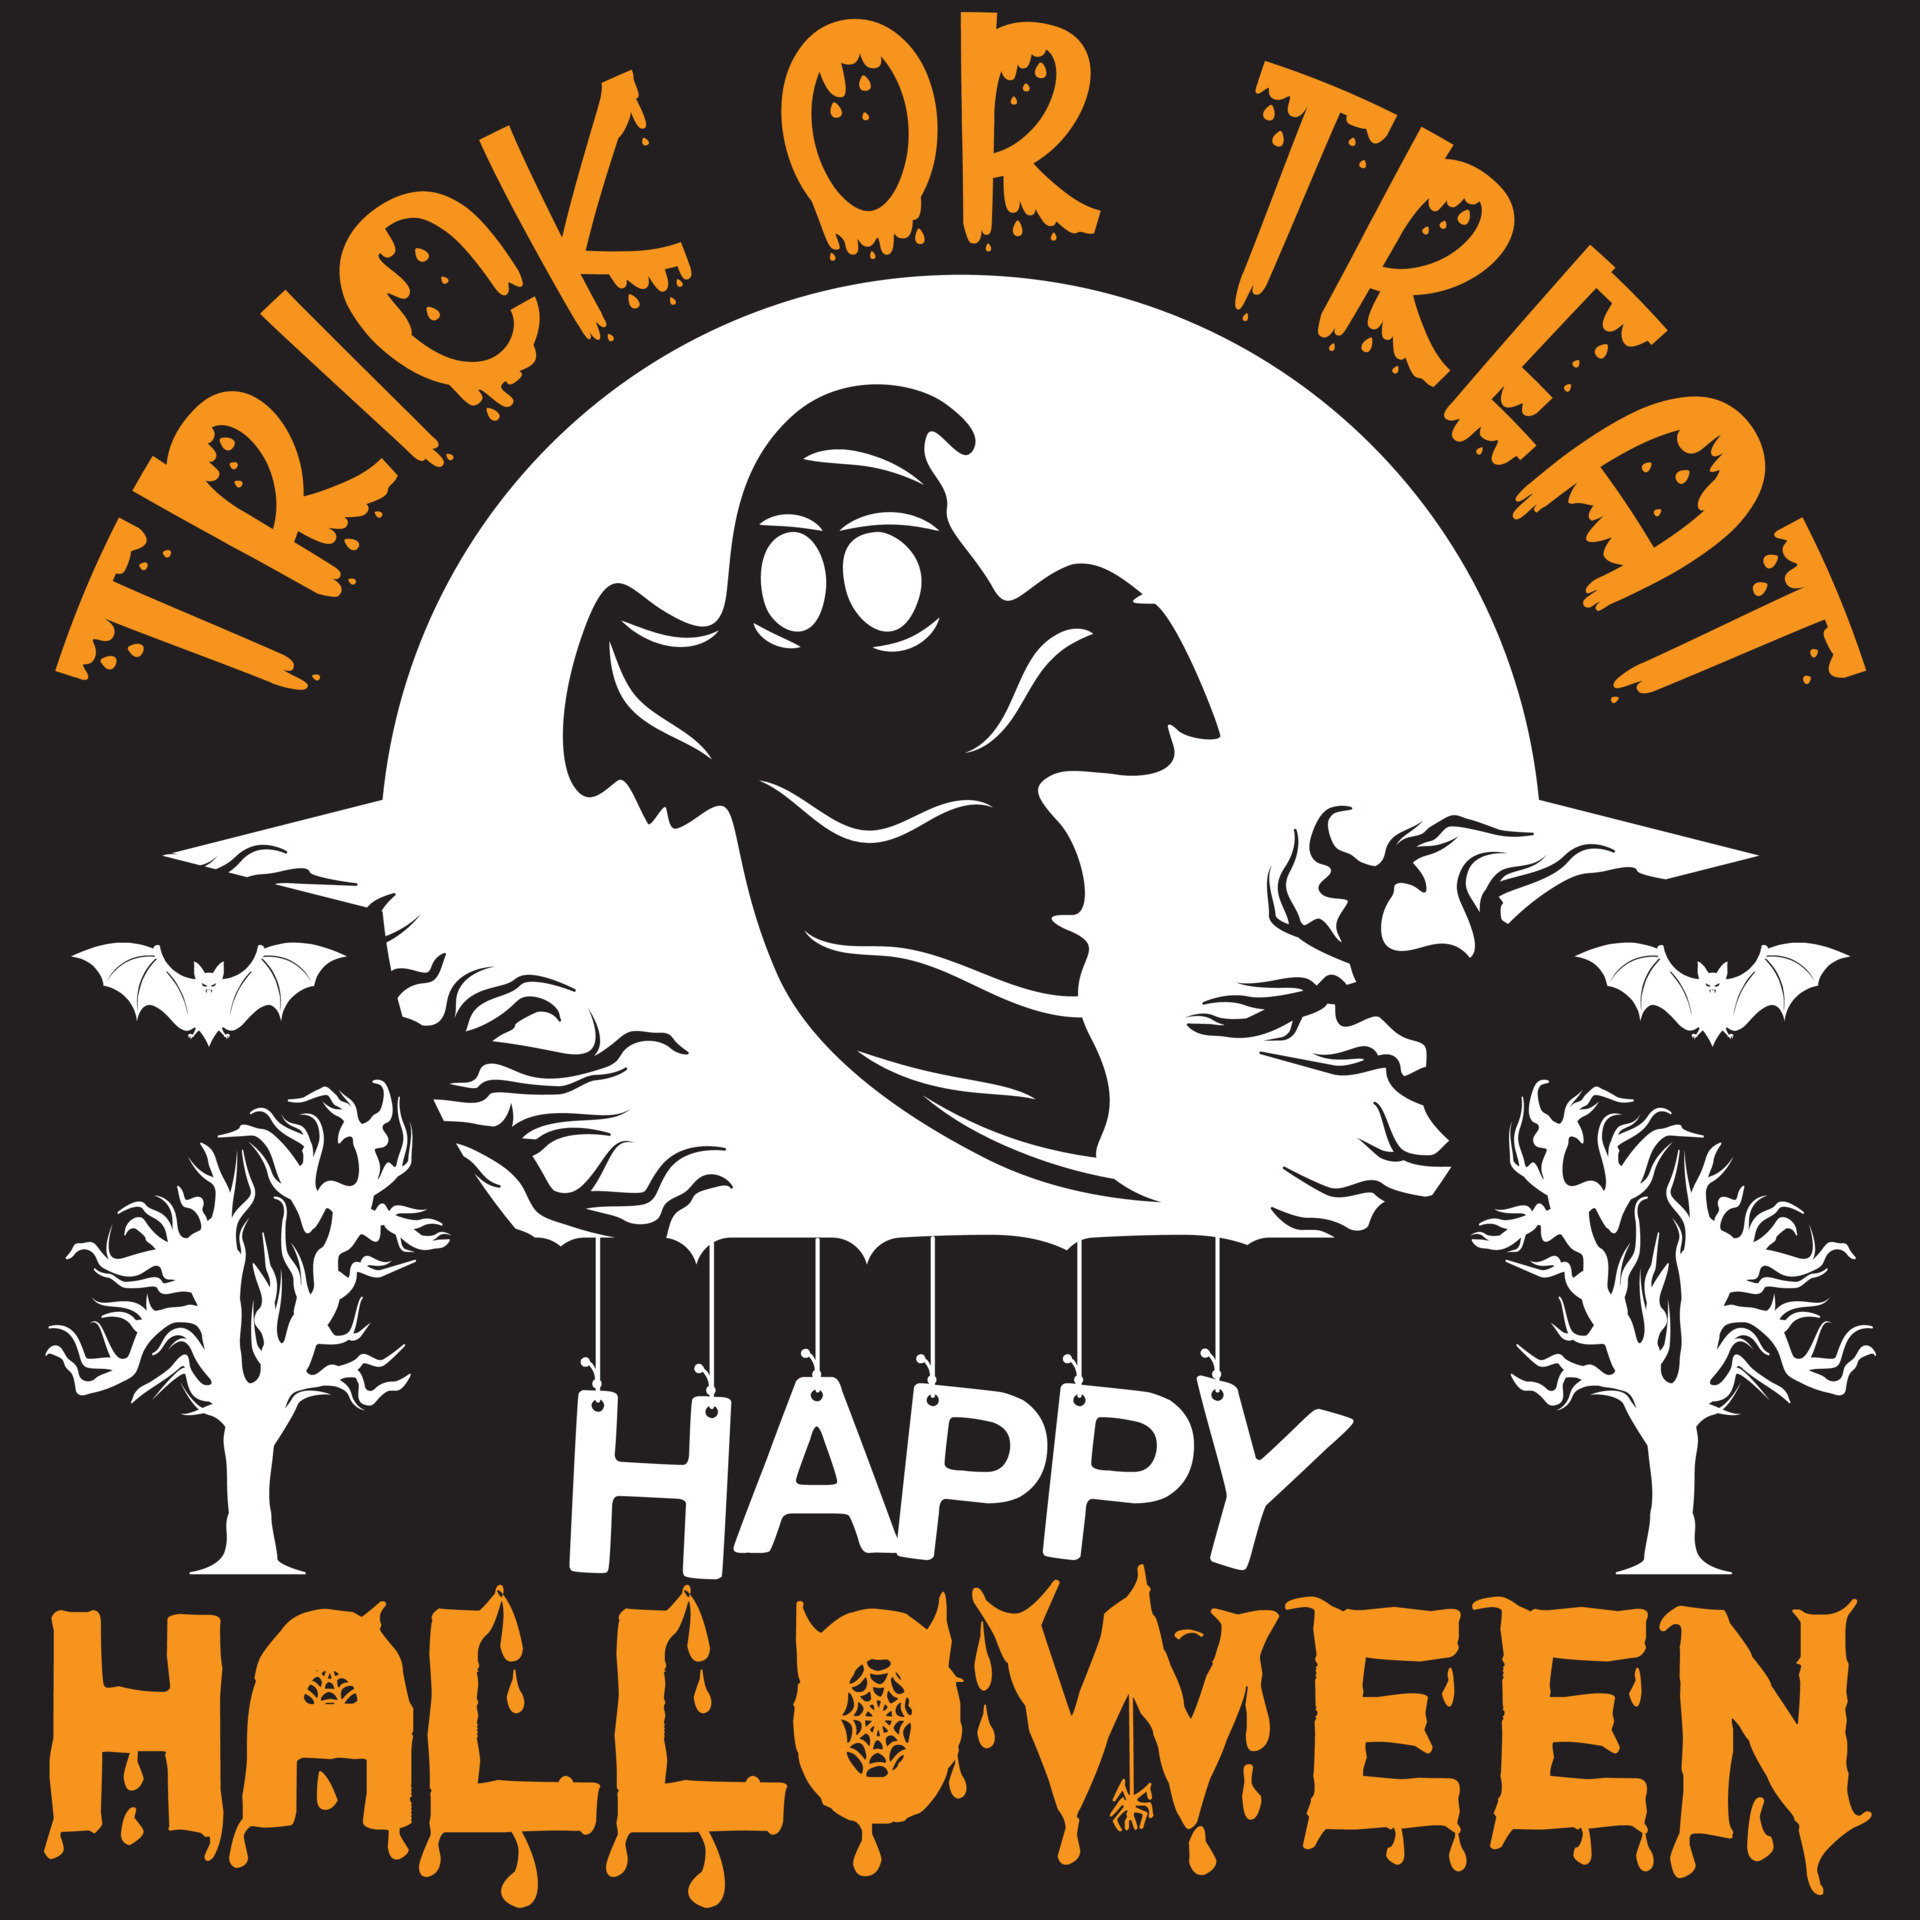 trick or treat happy Halloween 5416512 Vector Art at Vecteezy